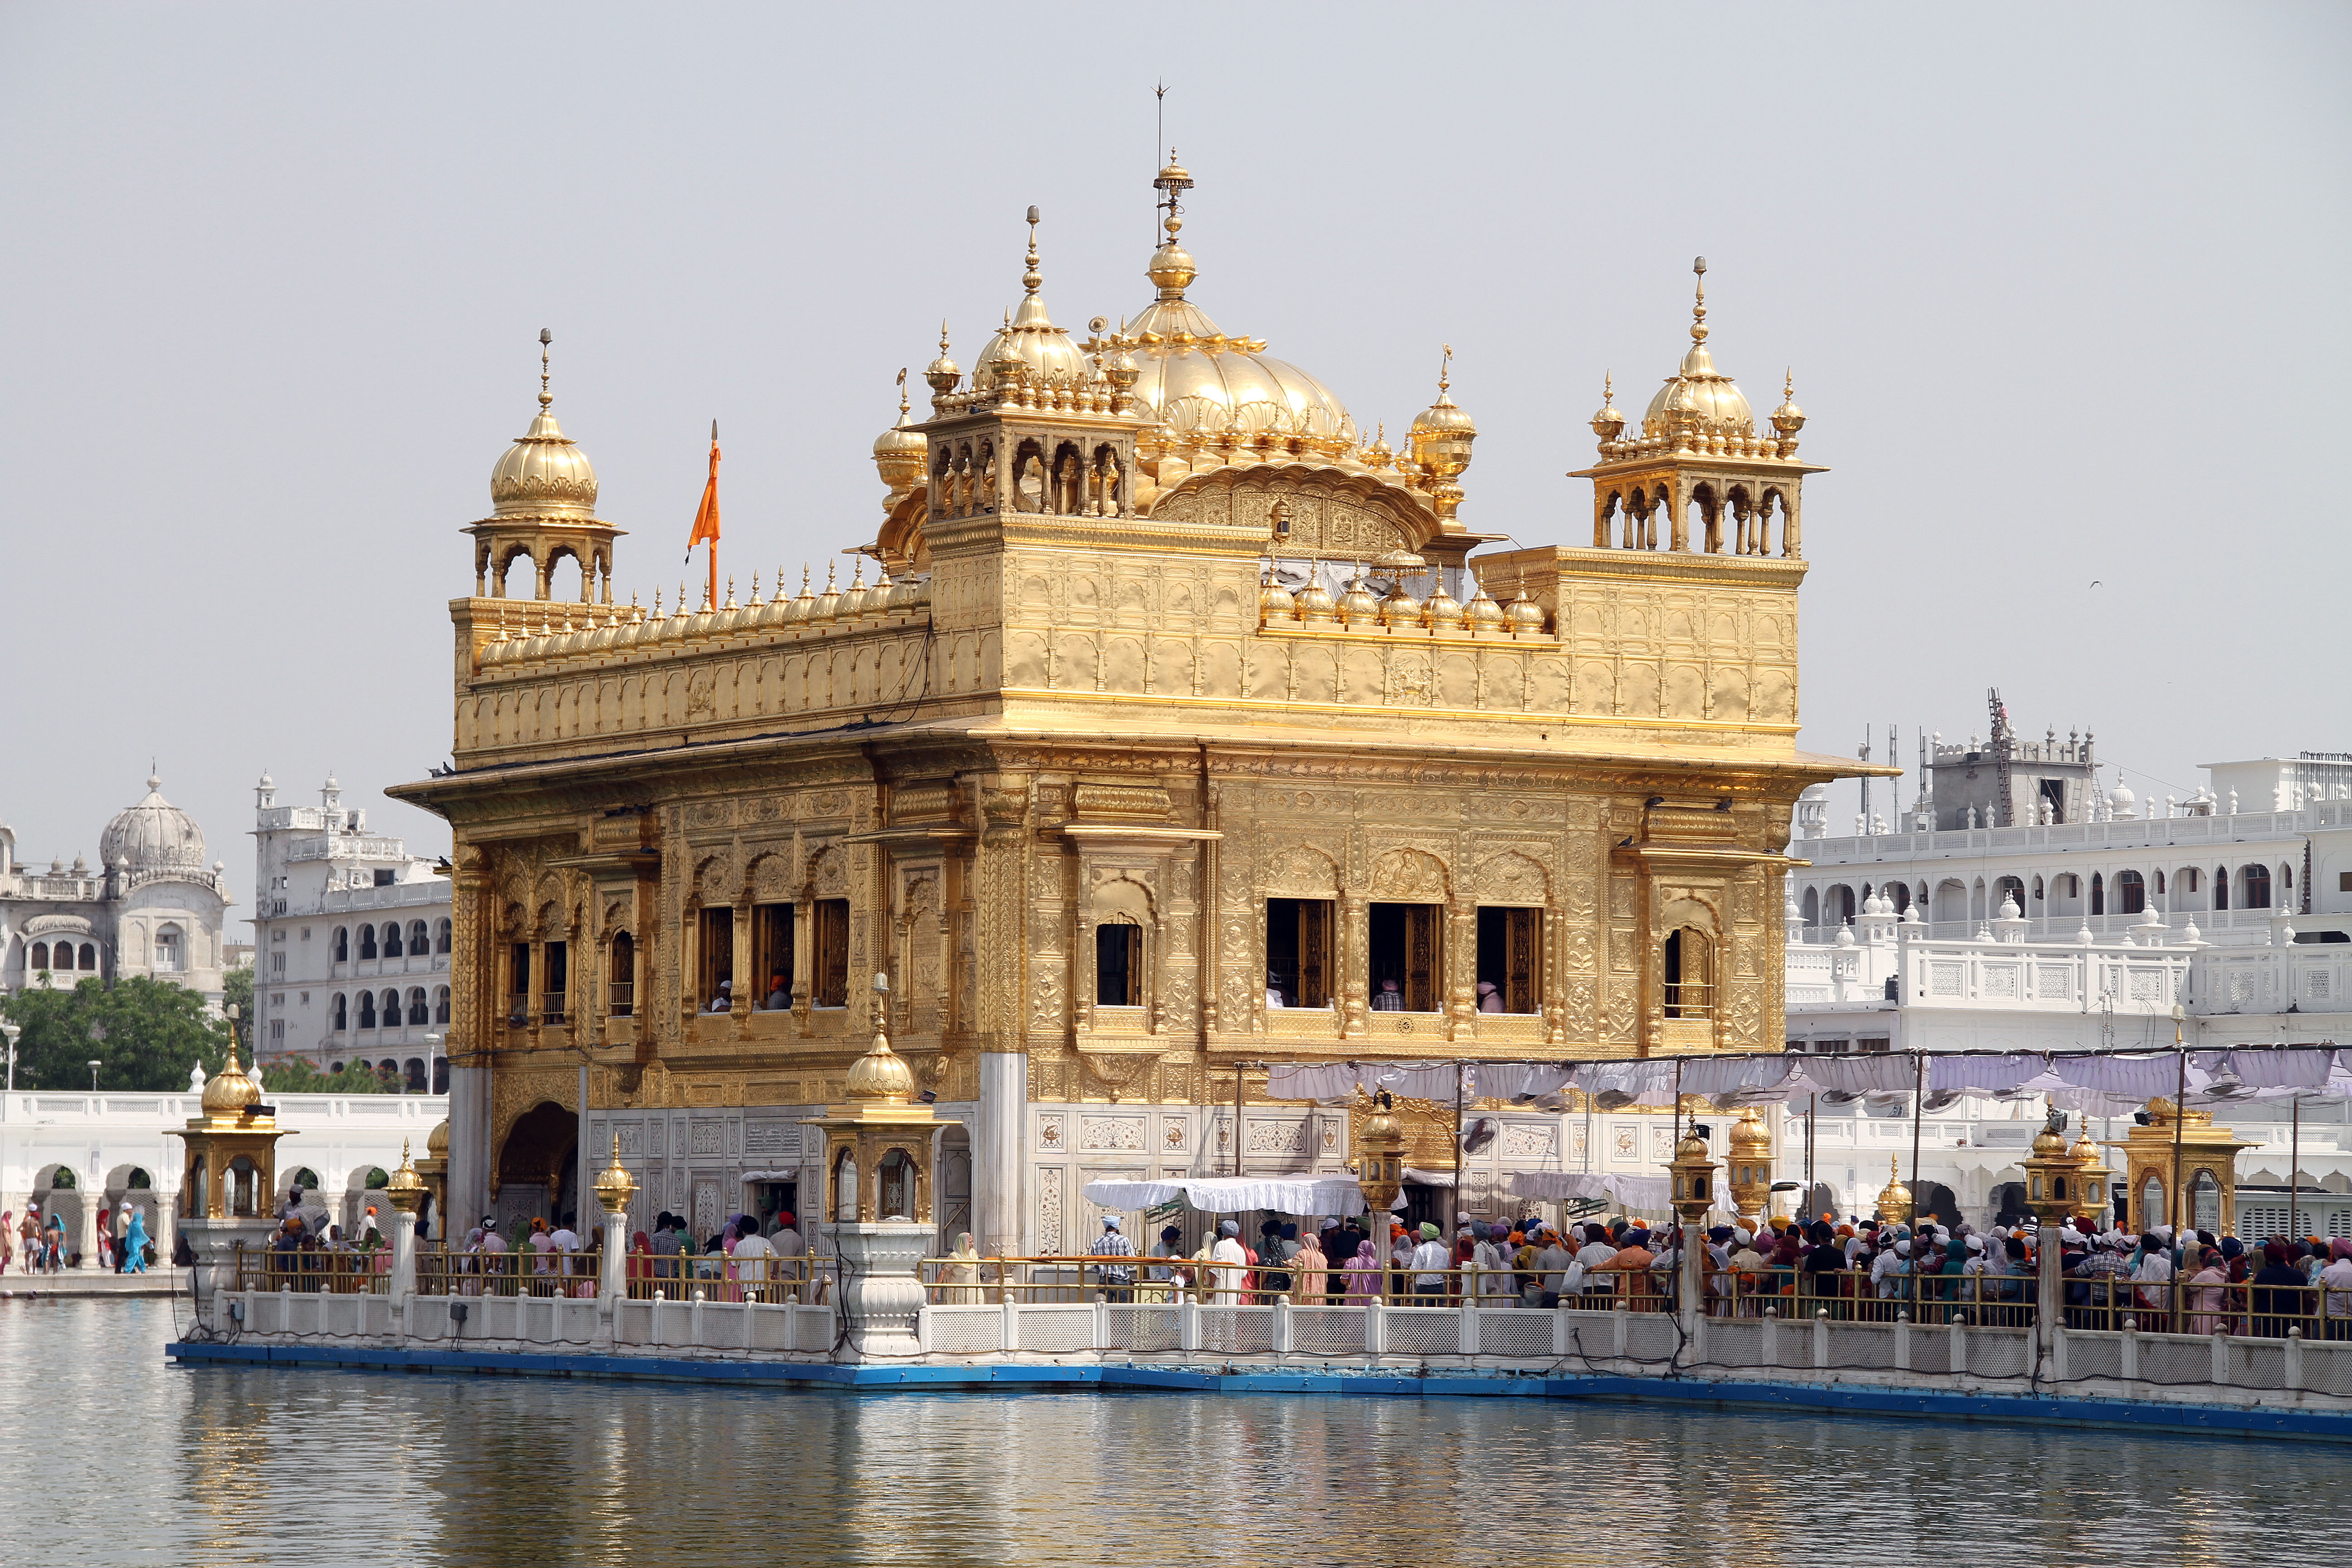 Sightseeing of Holy City of Sikhs – Amritsar